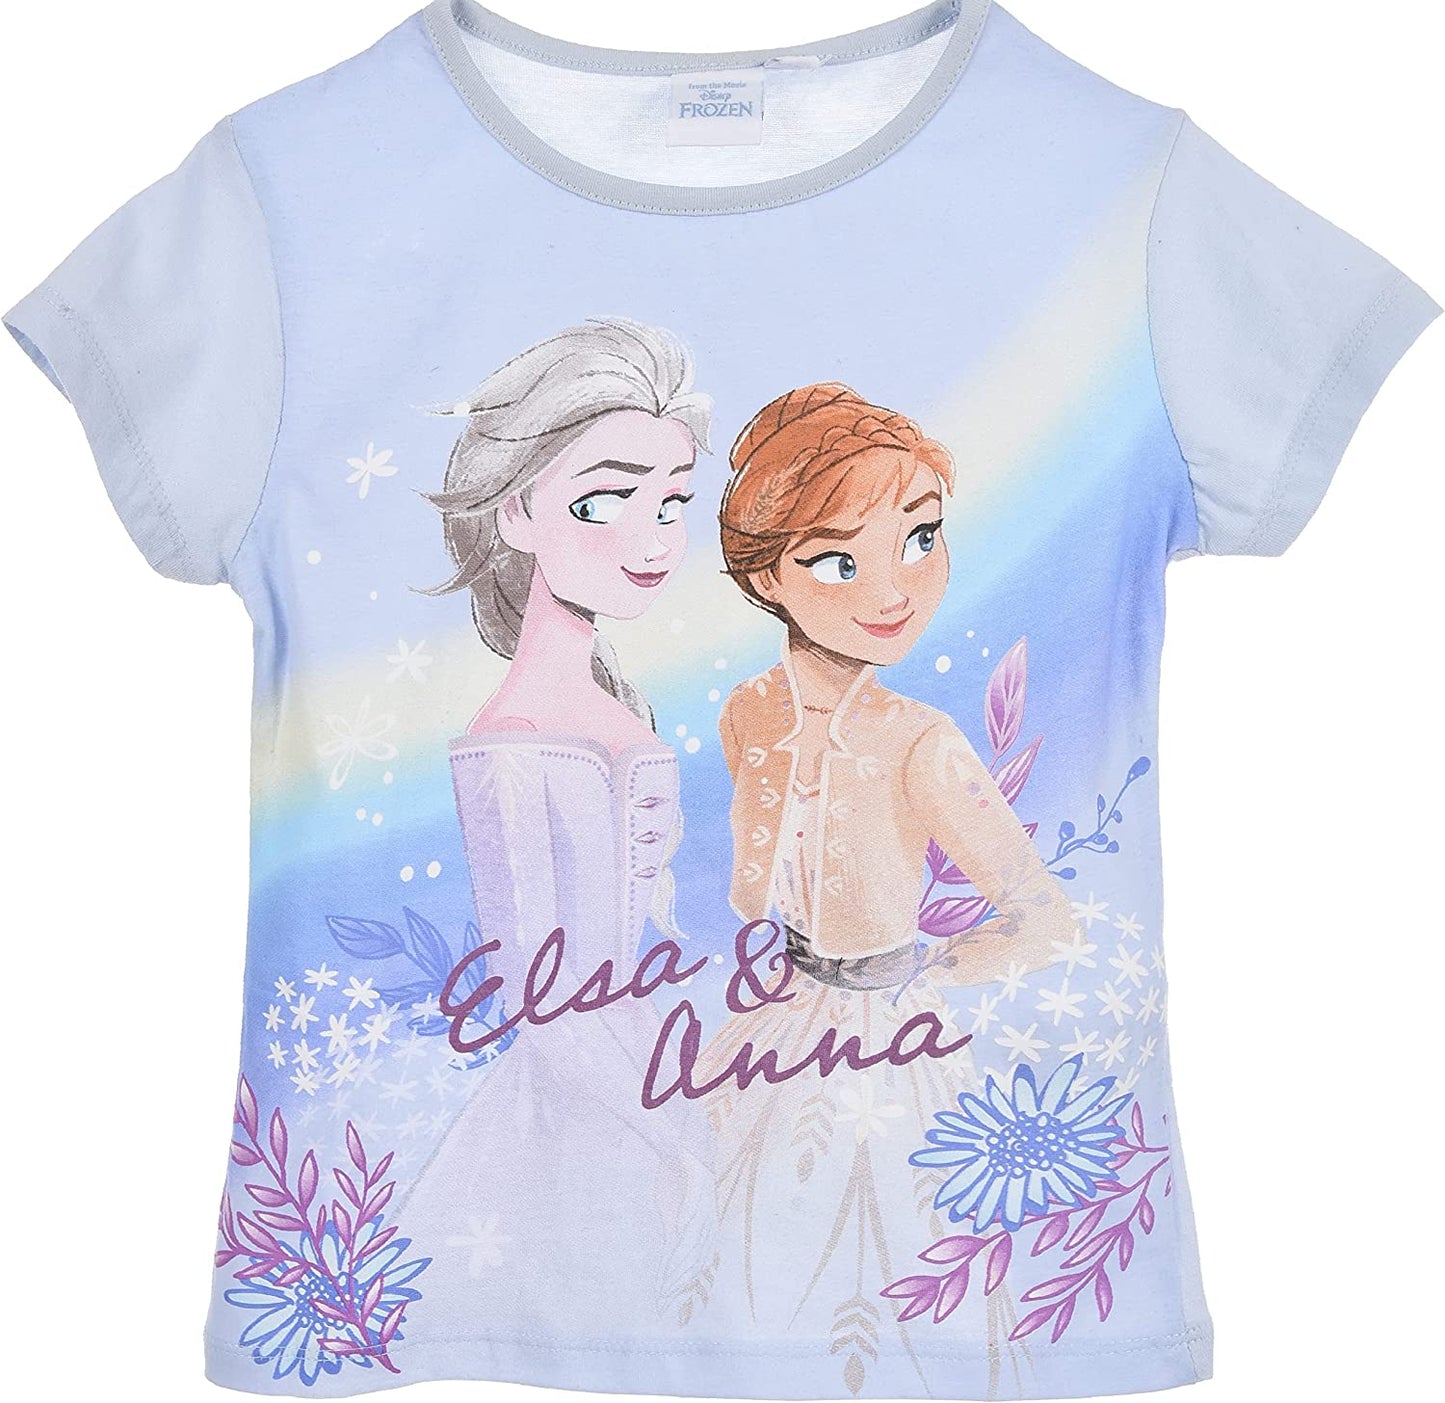 Frozen Elsa & Anna Short Sleeve T-Shirts